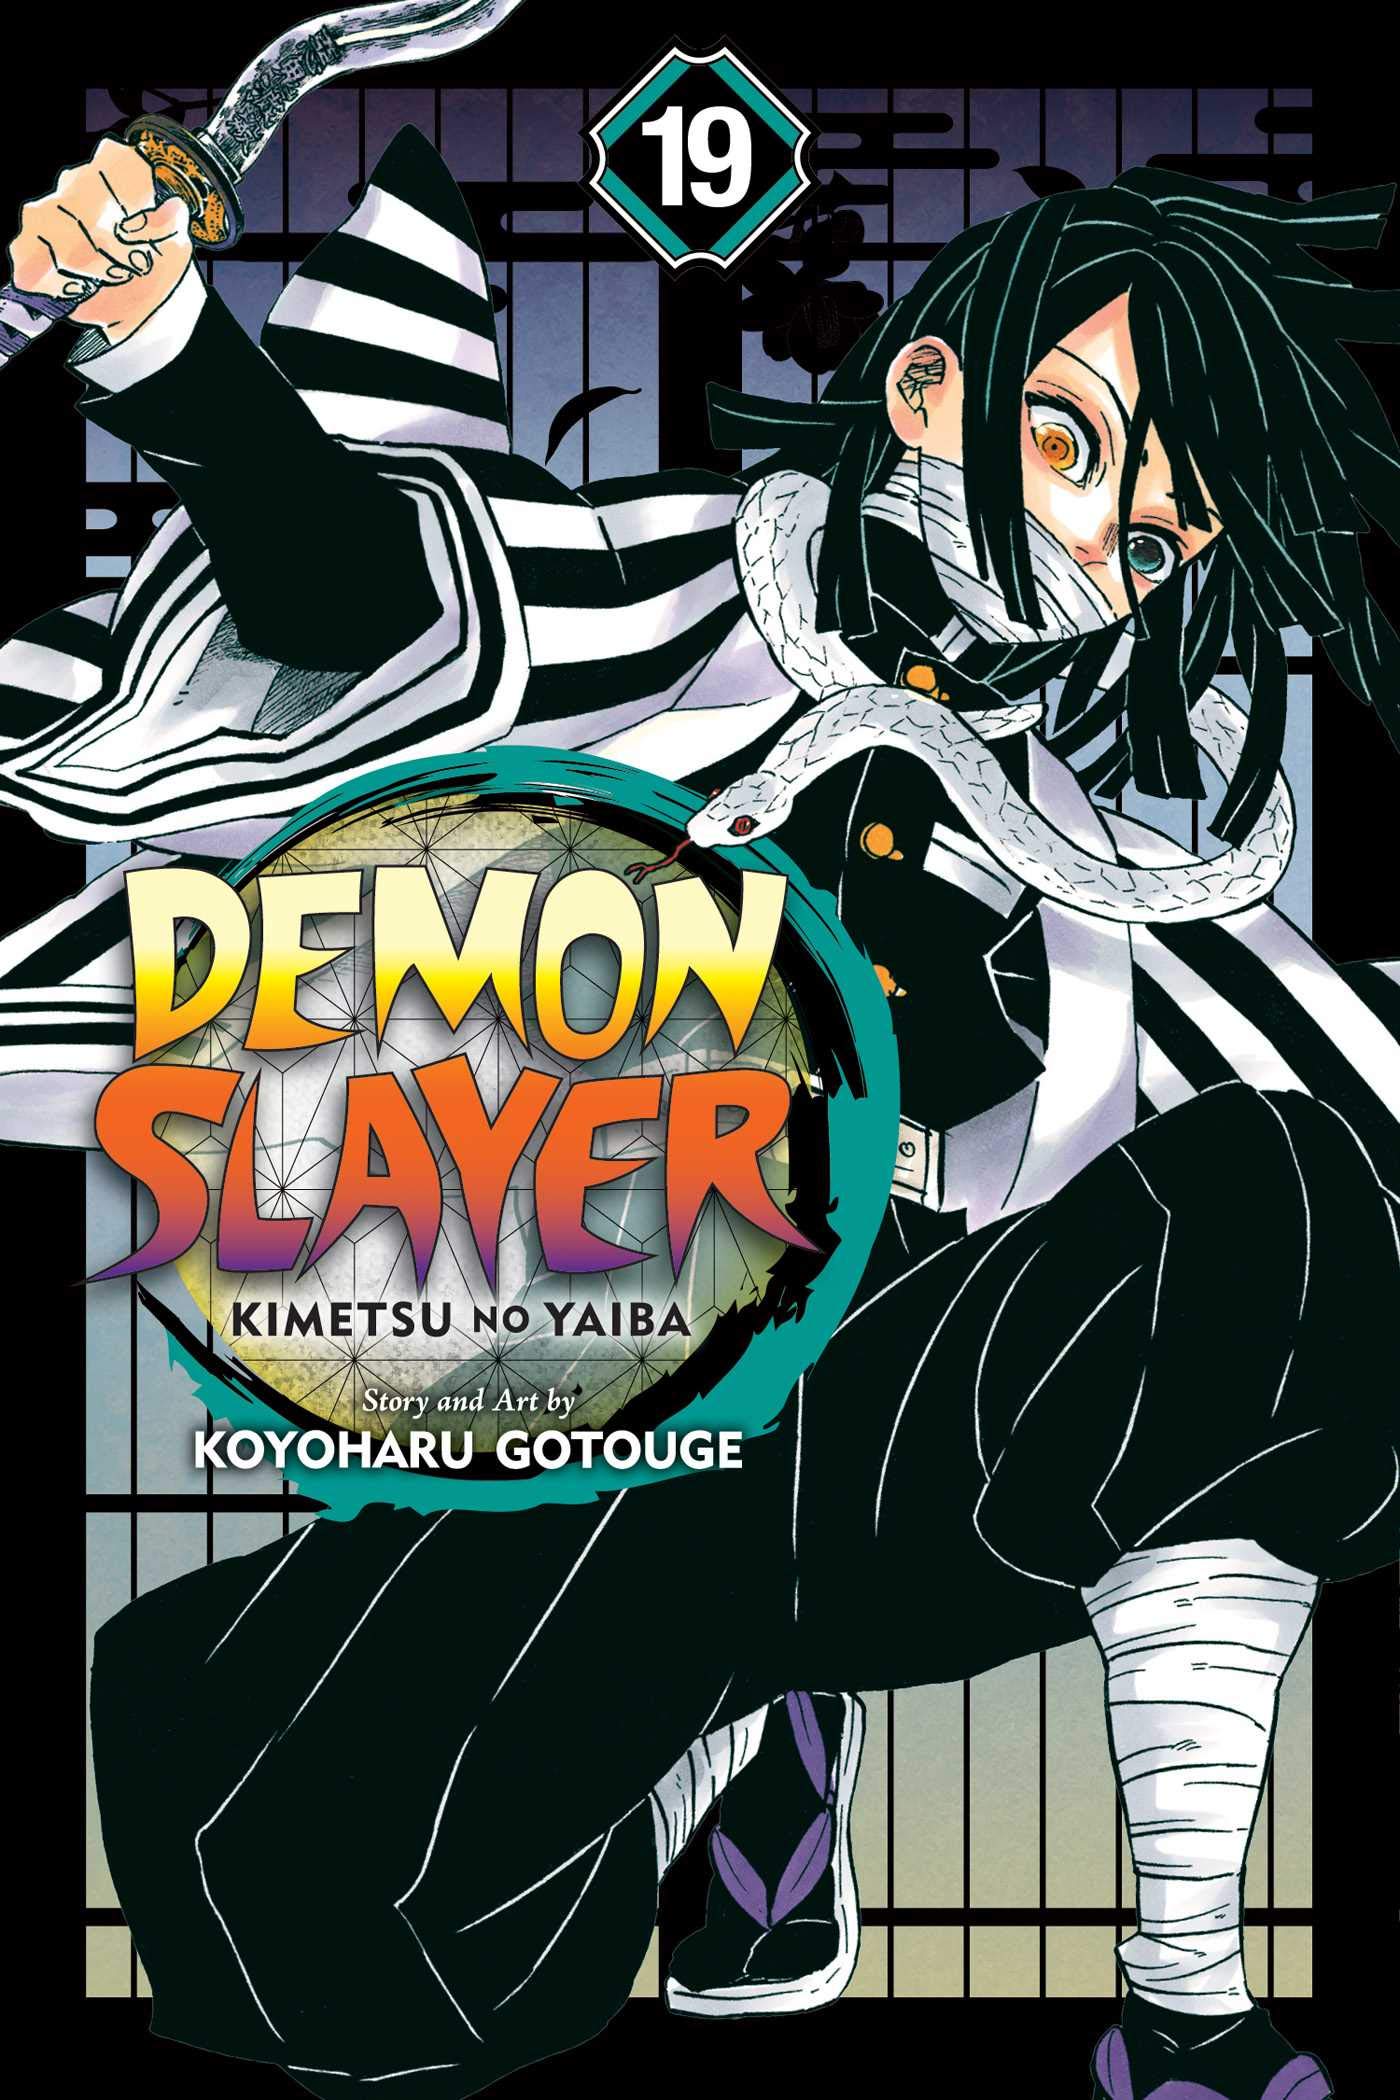 Demon Slayer: Kimetsu no Yaiba - Volume 19 | Koyoharu Gotouge